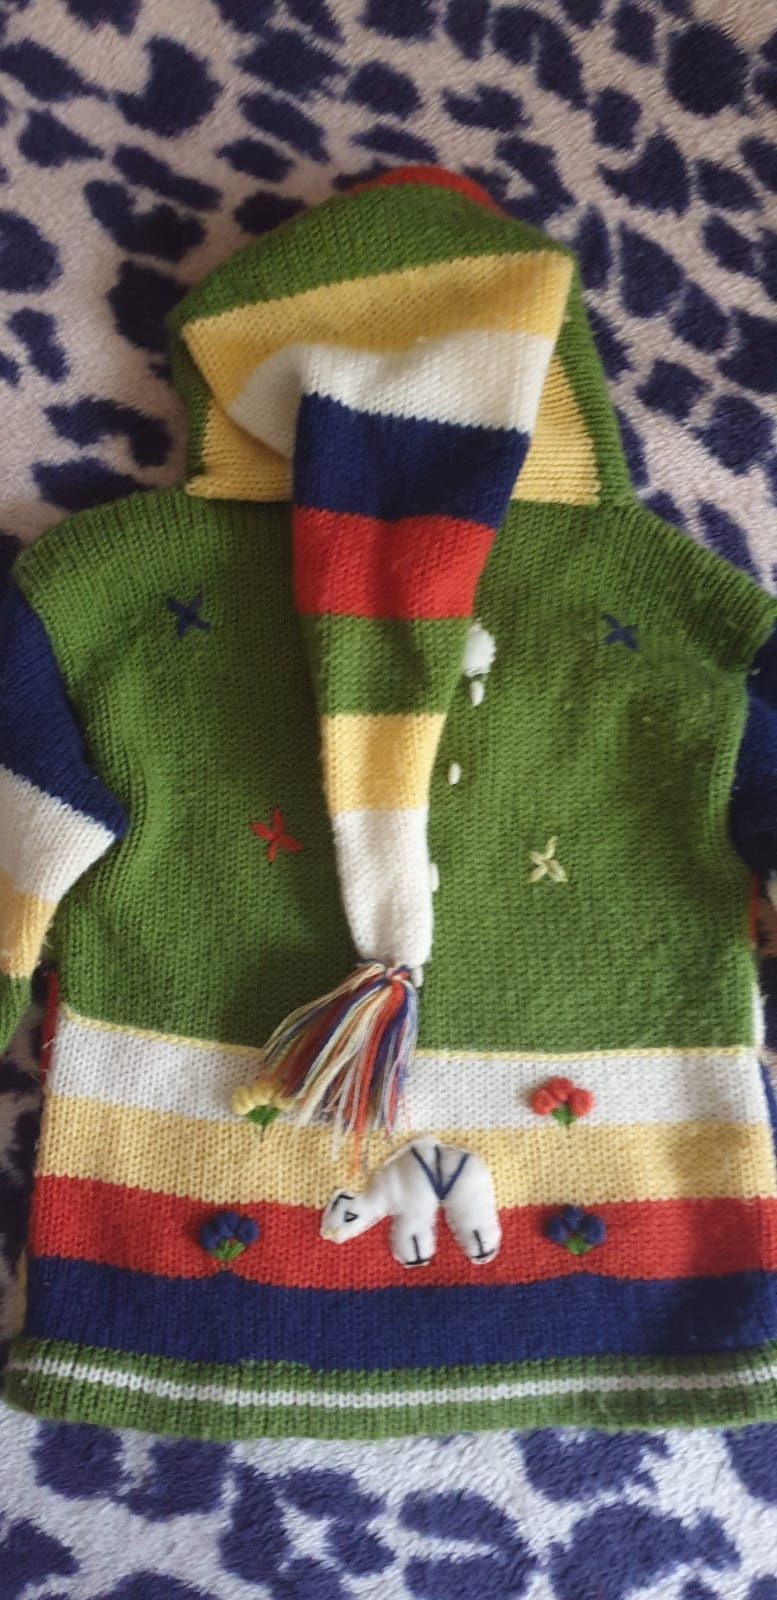 Vand pulover/jerseu copii 2 ani lucrat manual